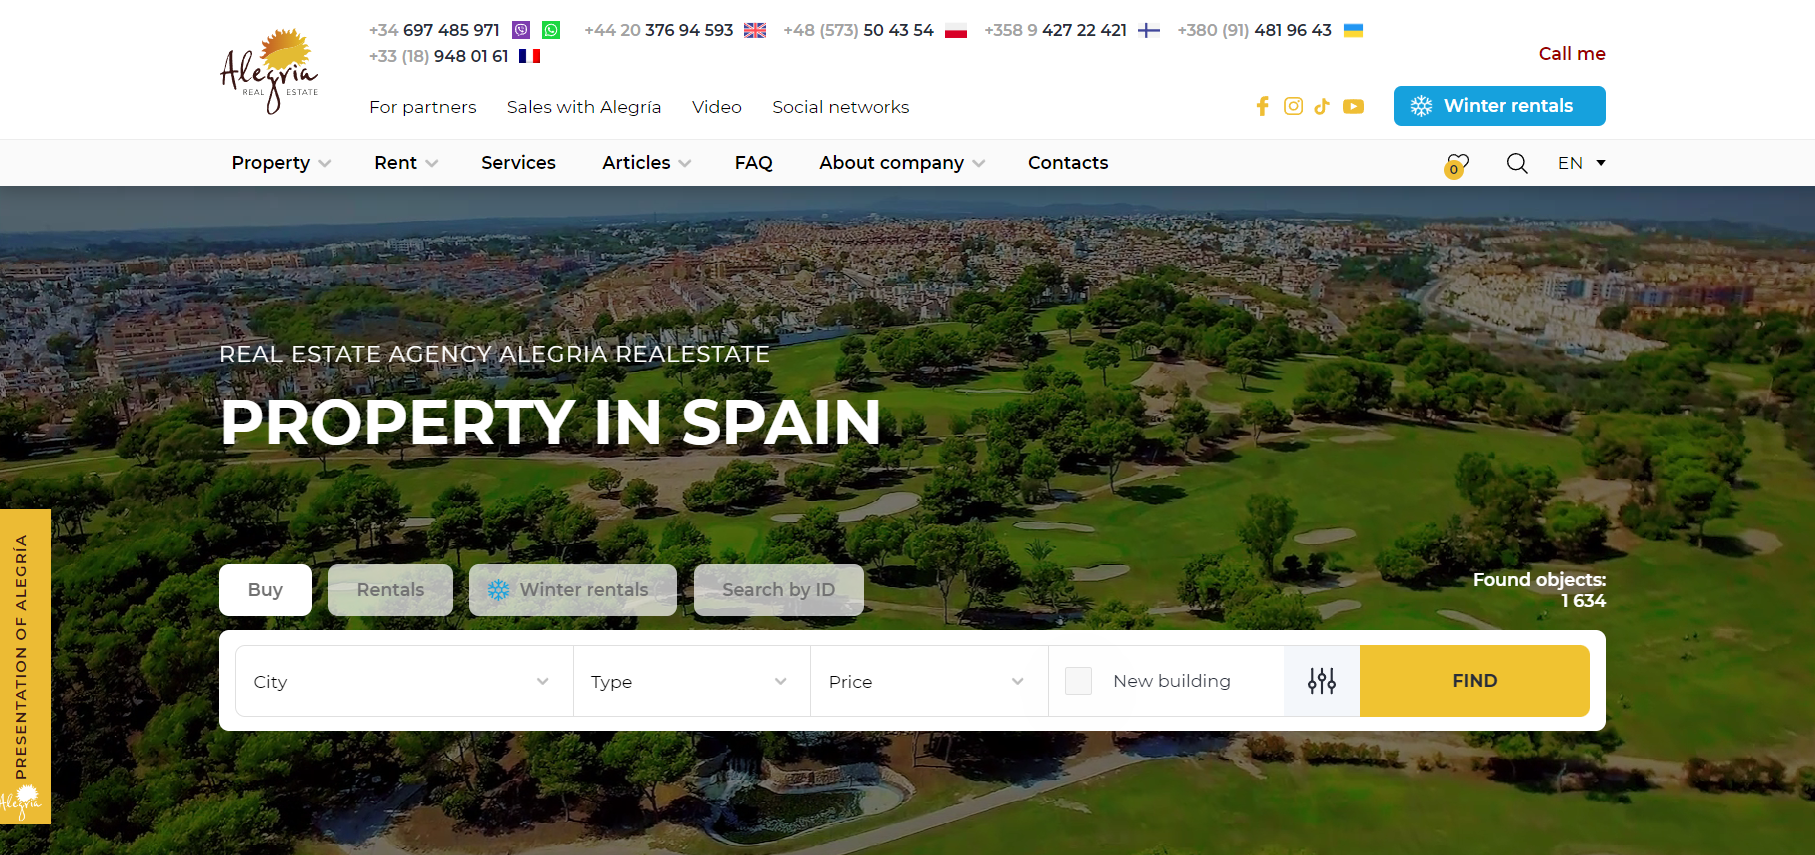 Агентство недвижимости Alegria в Испании: Несоблюдение обязательств и финансовые потери